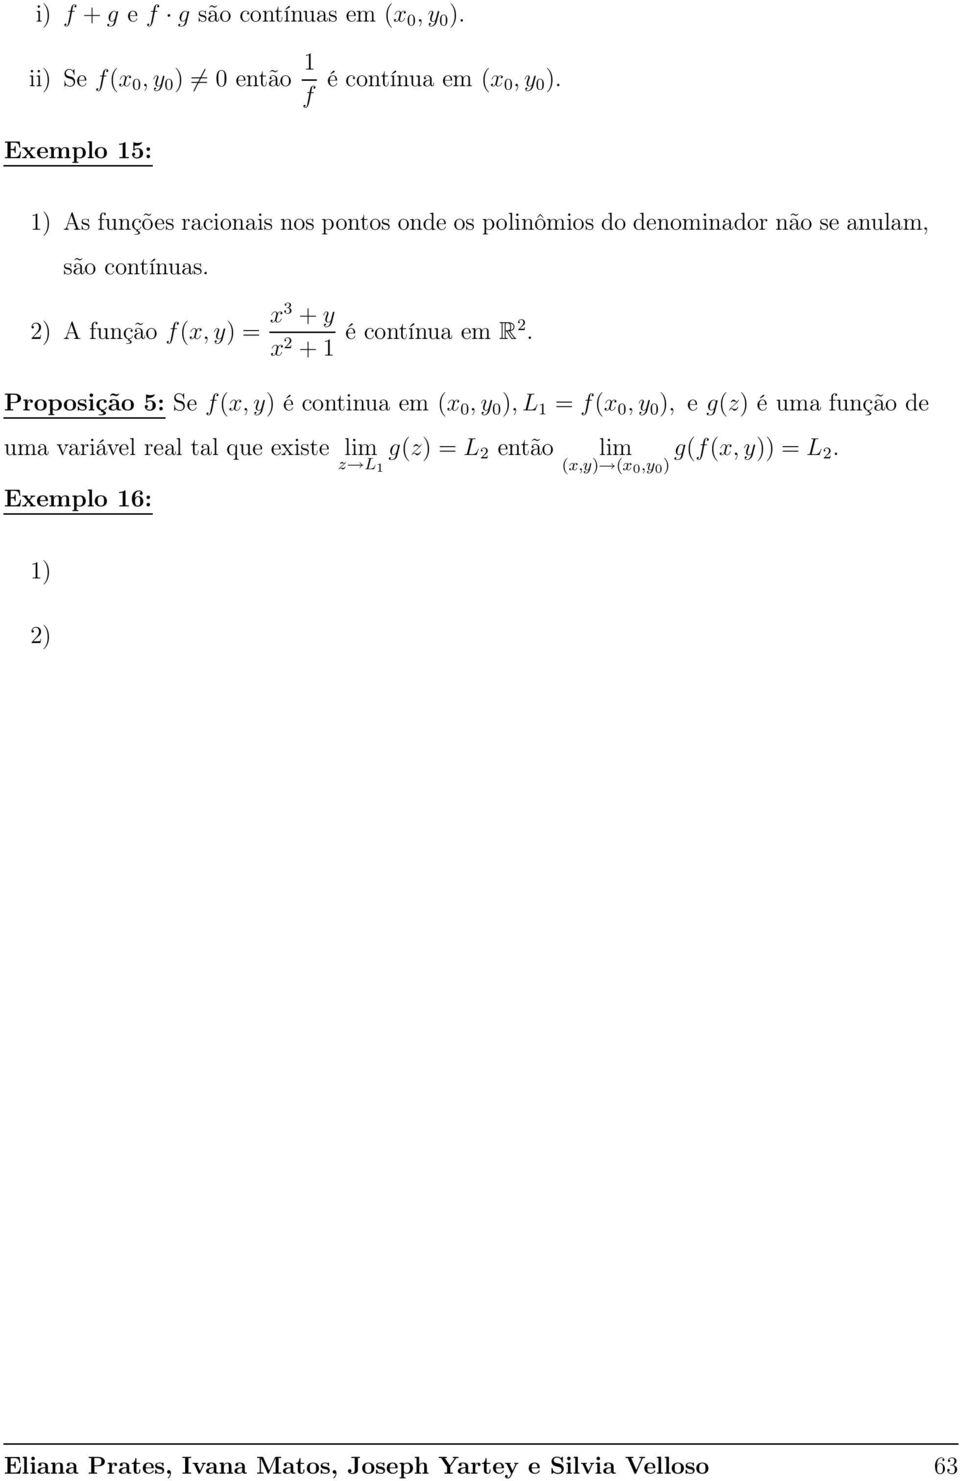 ) A função f(x, y) = x3 + y x + 1 é contínua em R.